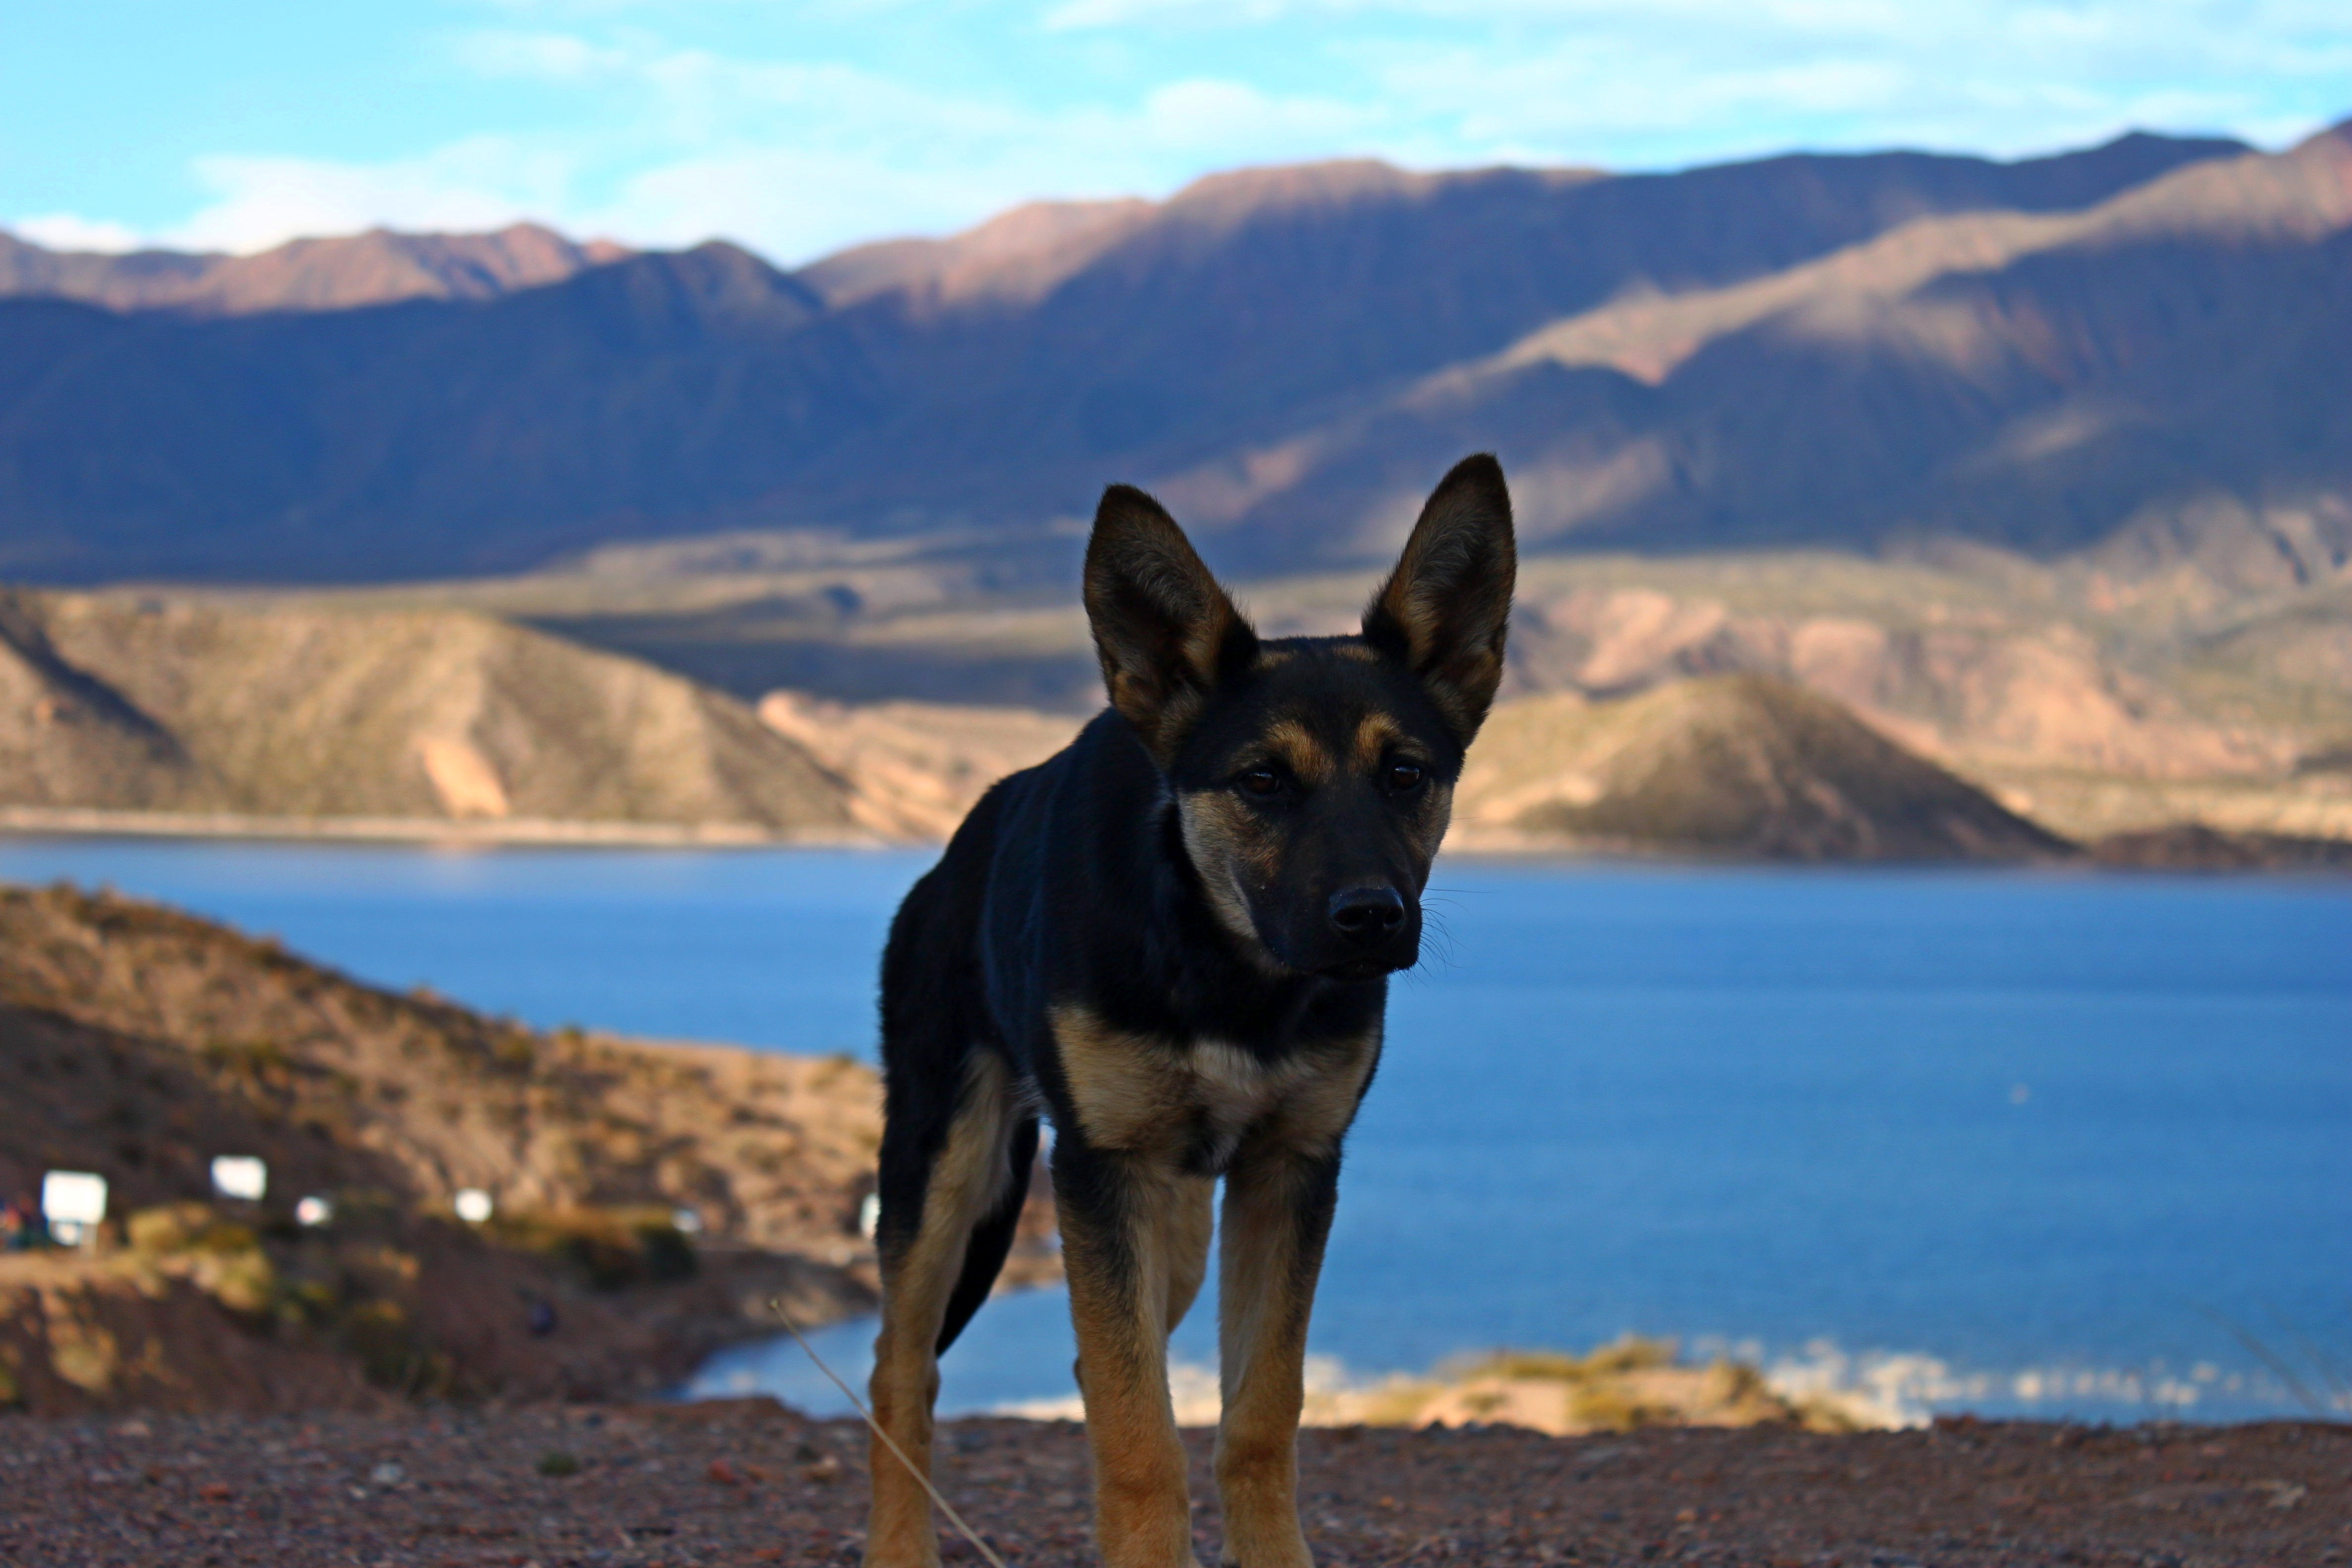 Dog pet landscape free image download